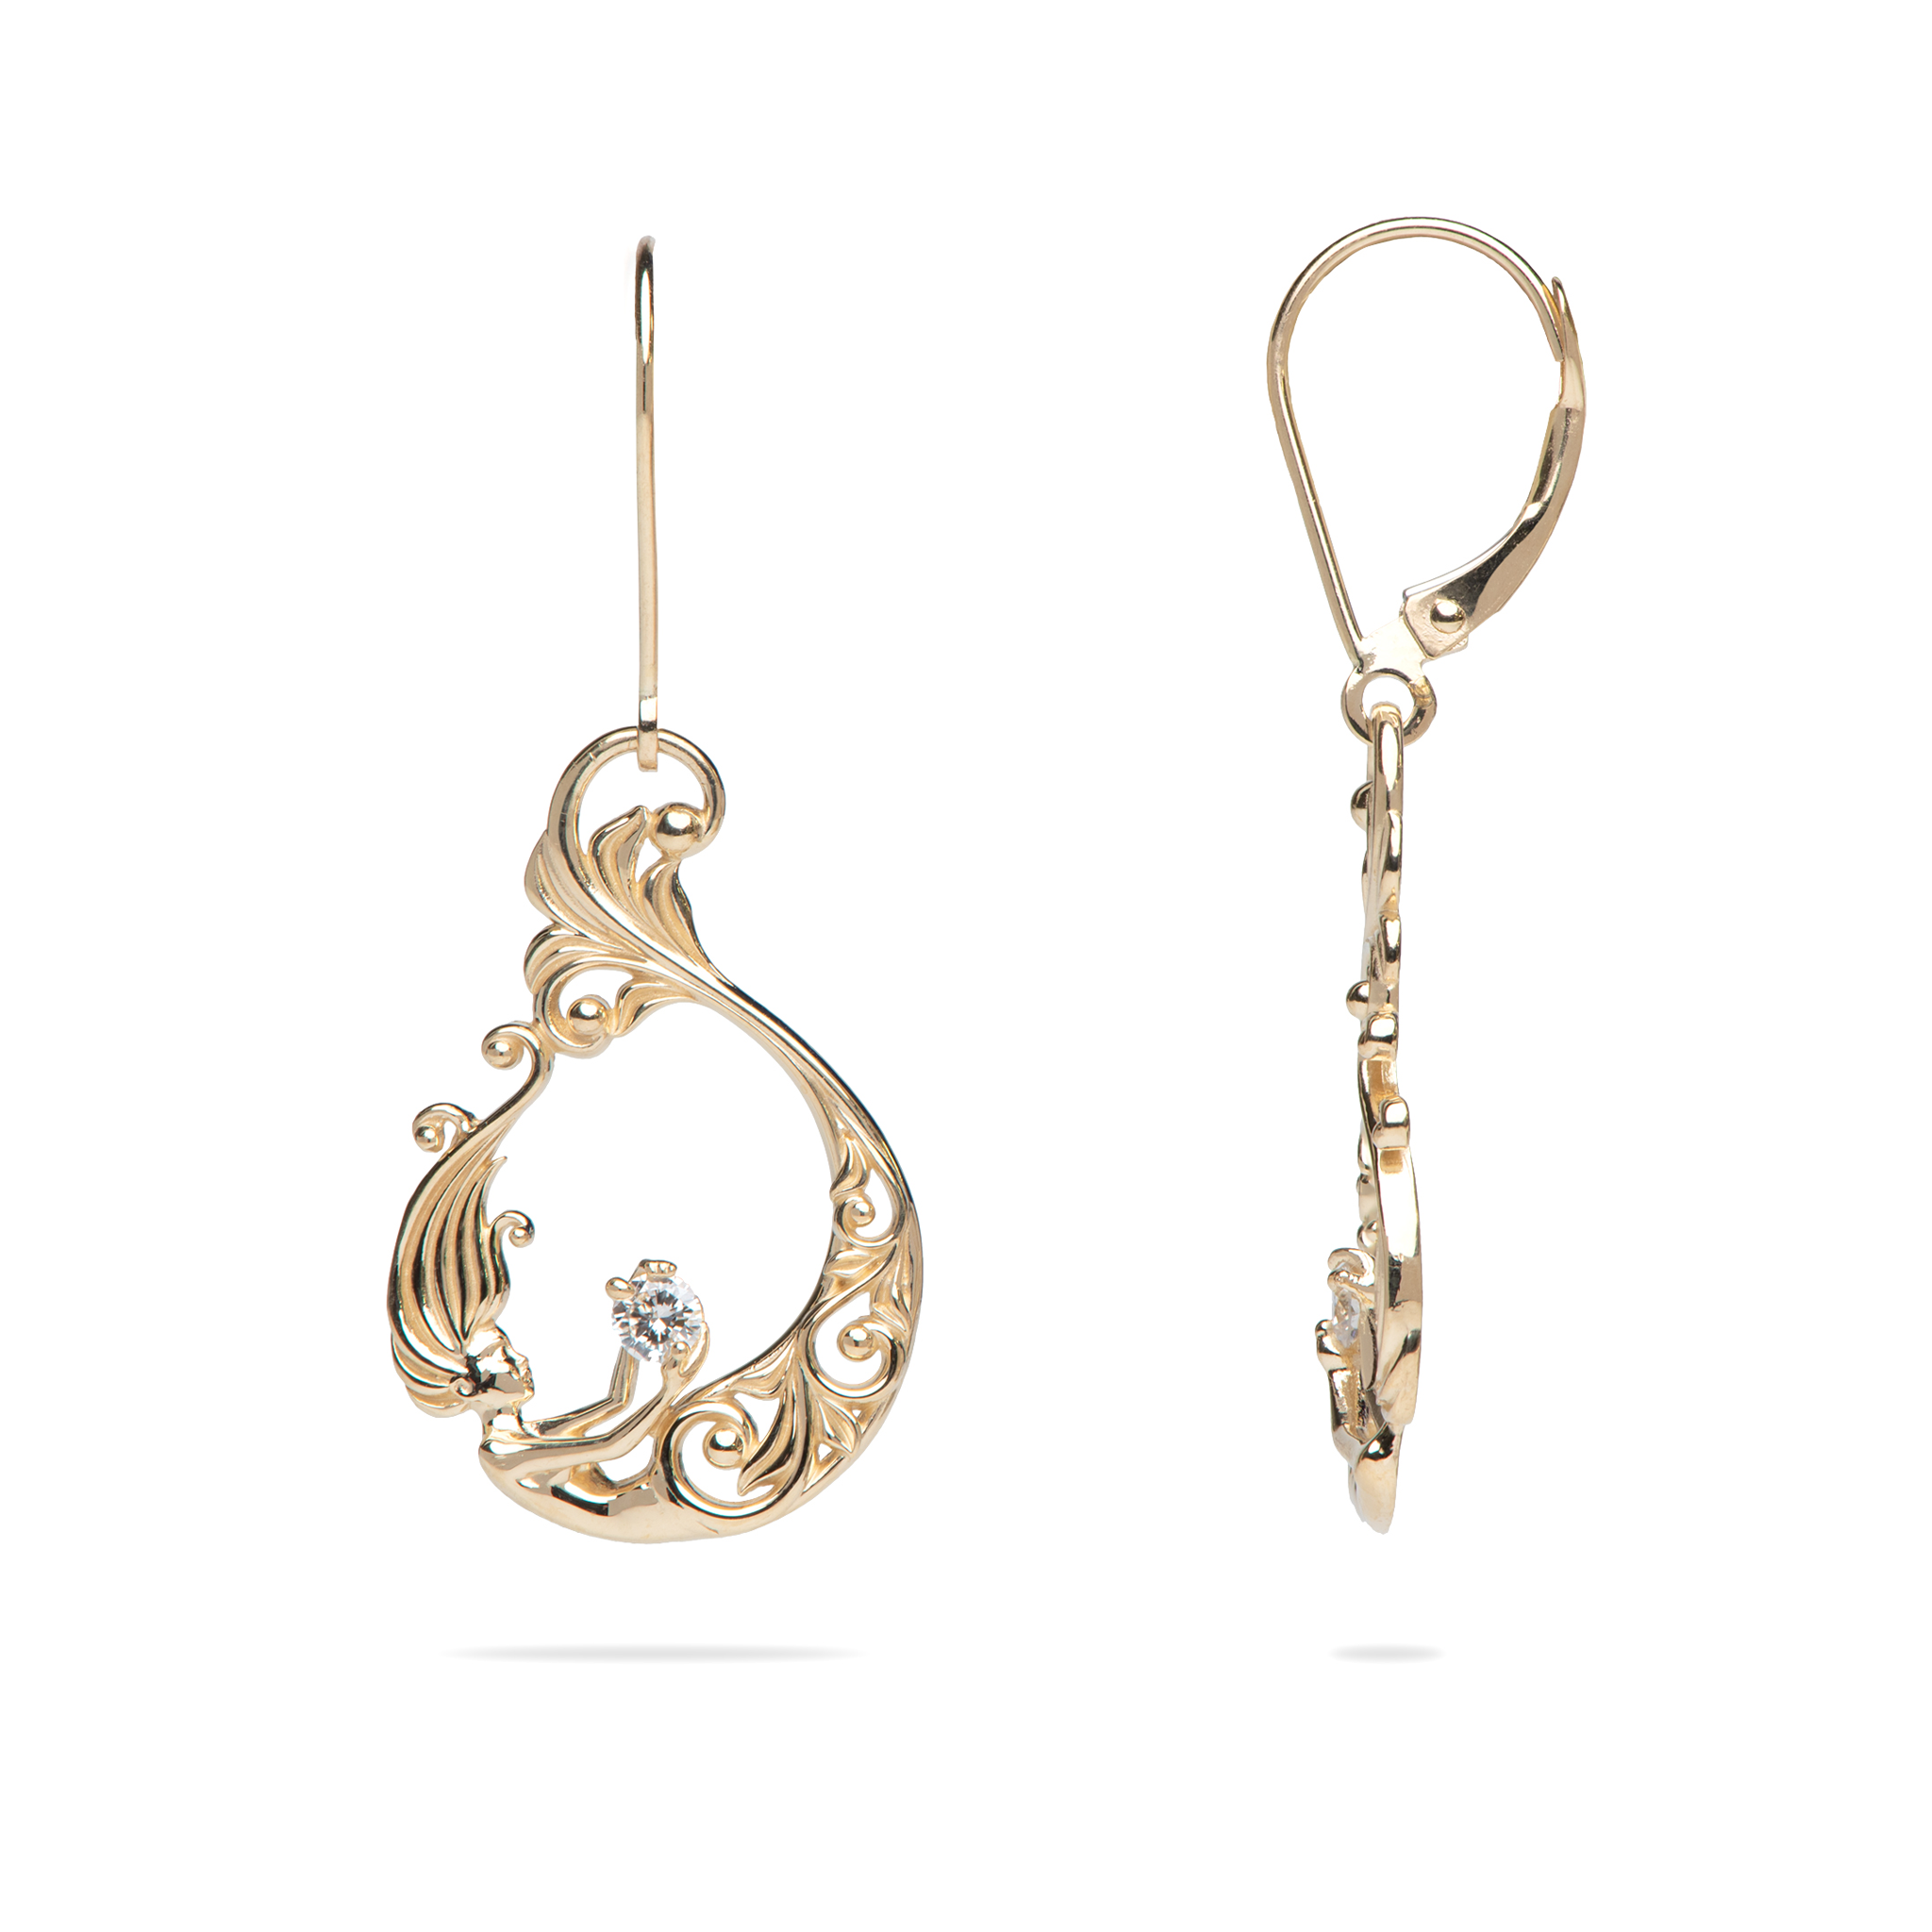 Living Heirloom Mermaid Earrings in Gold with Diamonds - 25mm